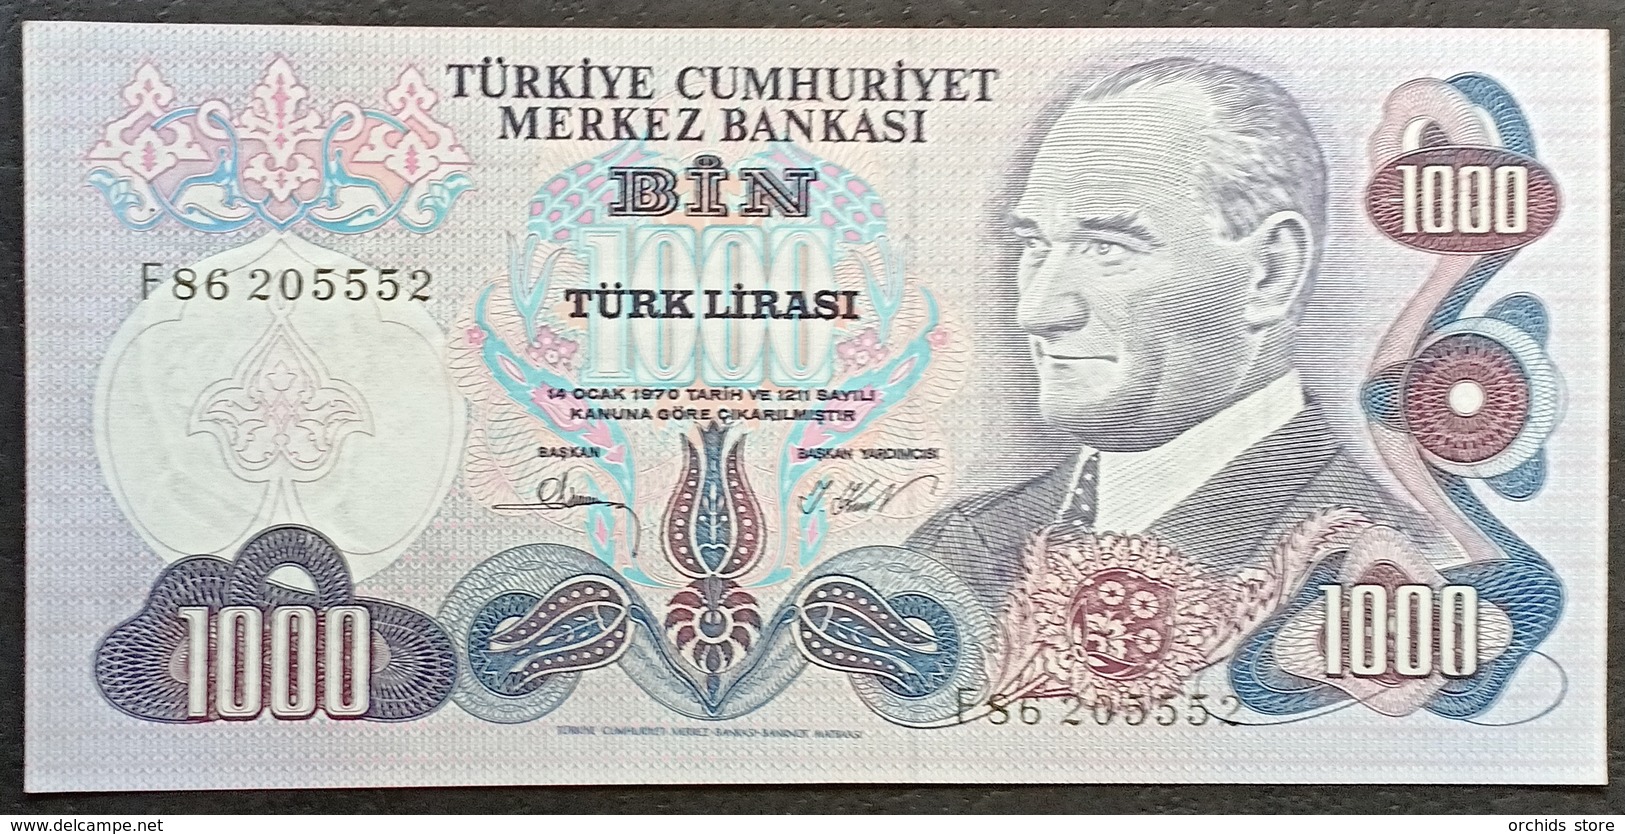 FF - Turkey Banknote 1970 1000 LIRAS P-191 F86 205552 UNC - Turkey